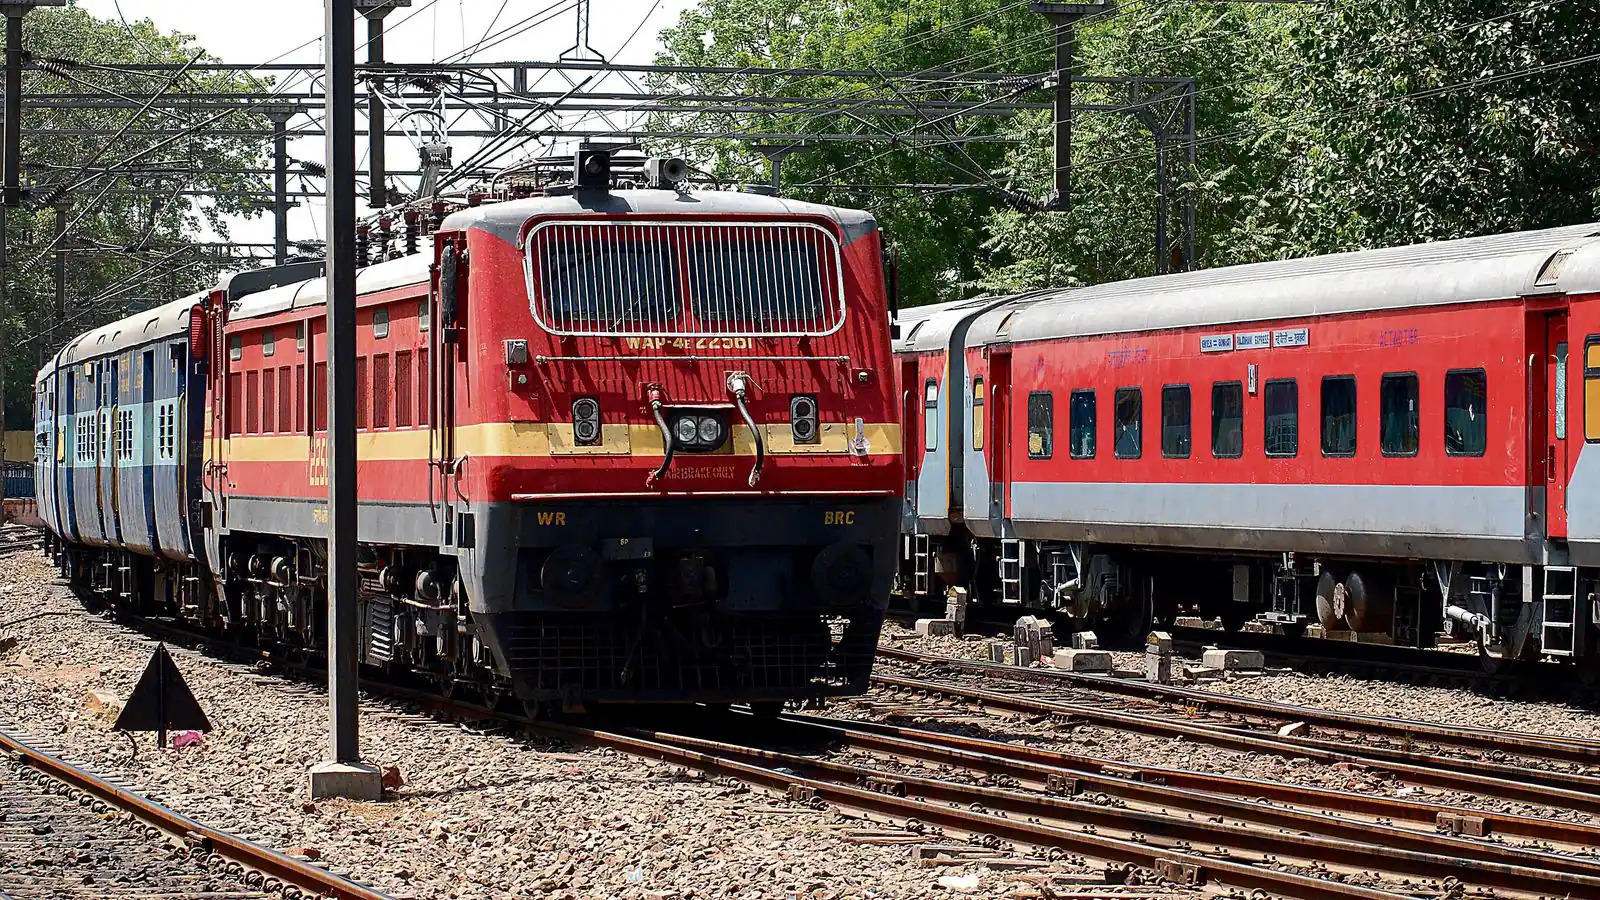 प्रदेश में रेलवे प्रोजेक्टों पर हुई धनवर्षा, नौ गुना बढ़ा बजट